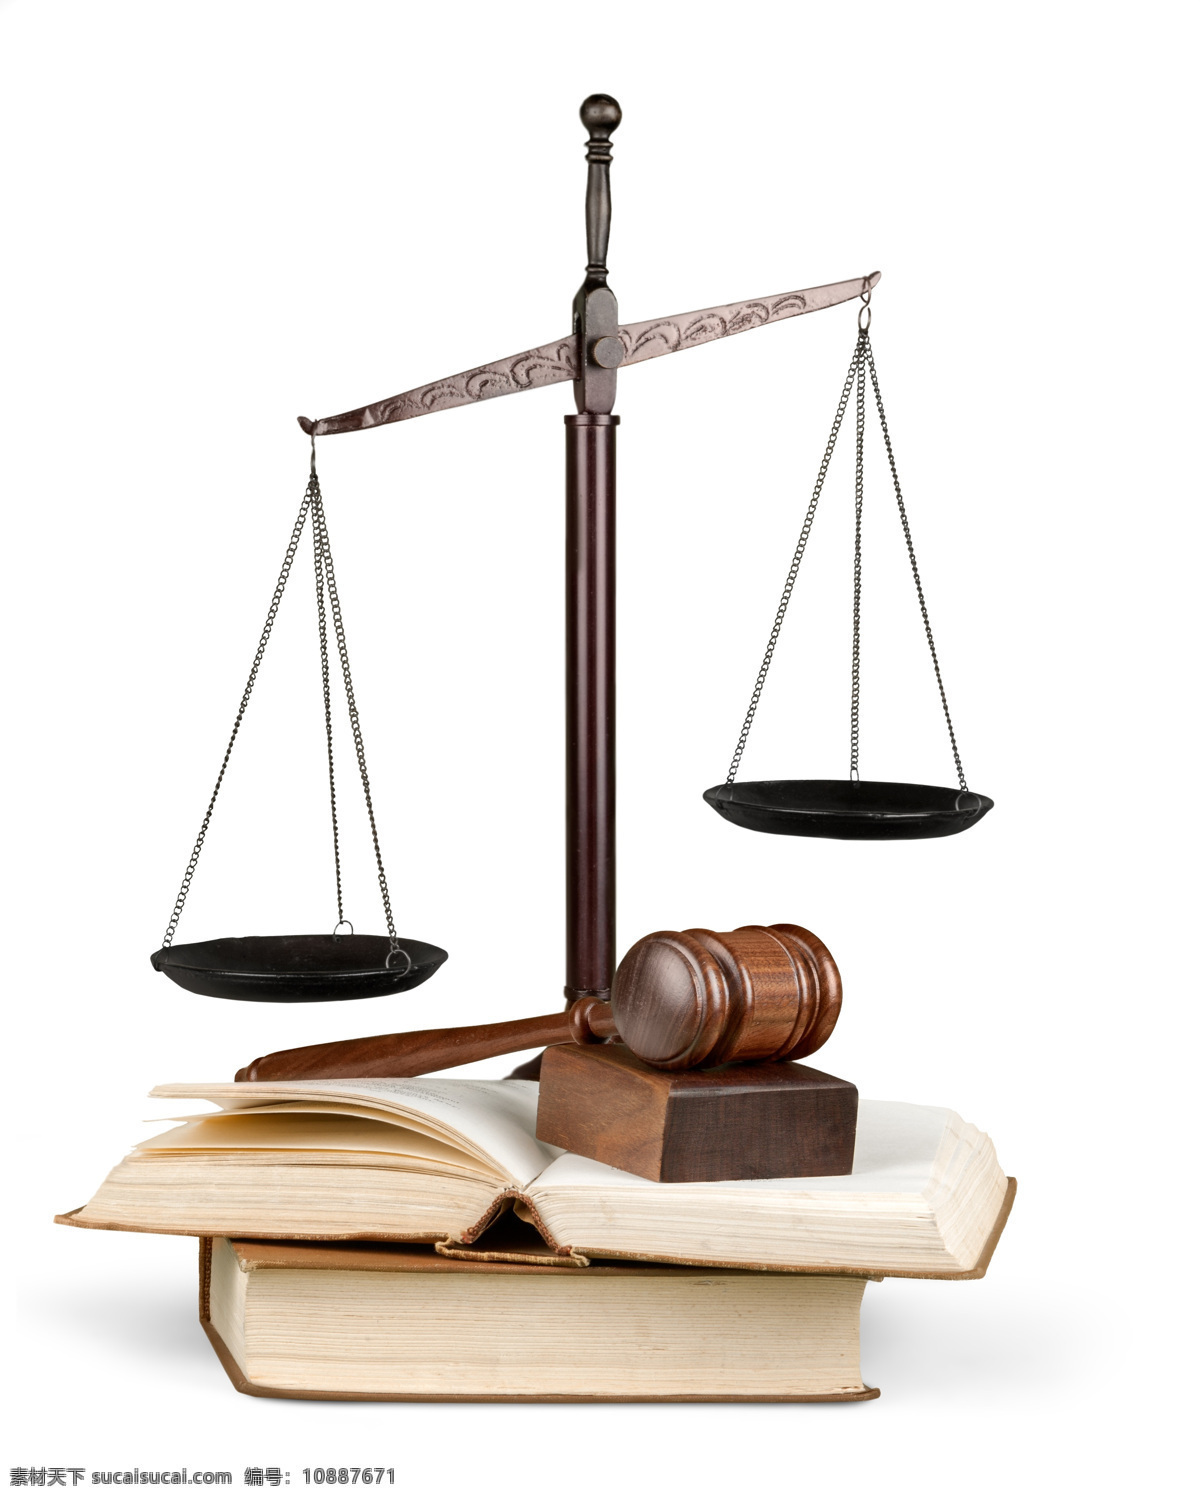 法槌和天平 法槌 法庭 法律 天平 司法素材 追槌 法律书本 公平 正义 生活百科 学习办公 生活素材